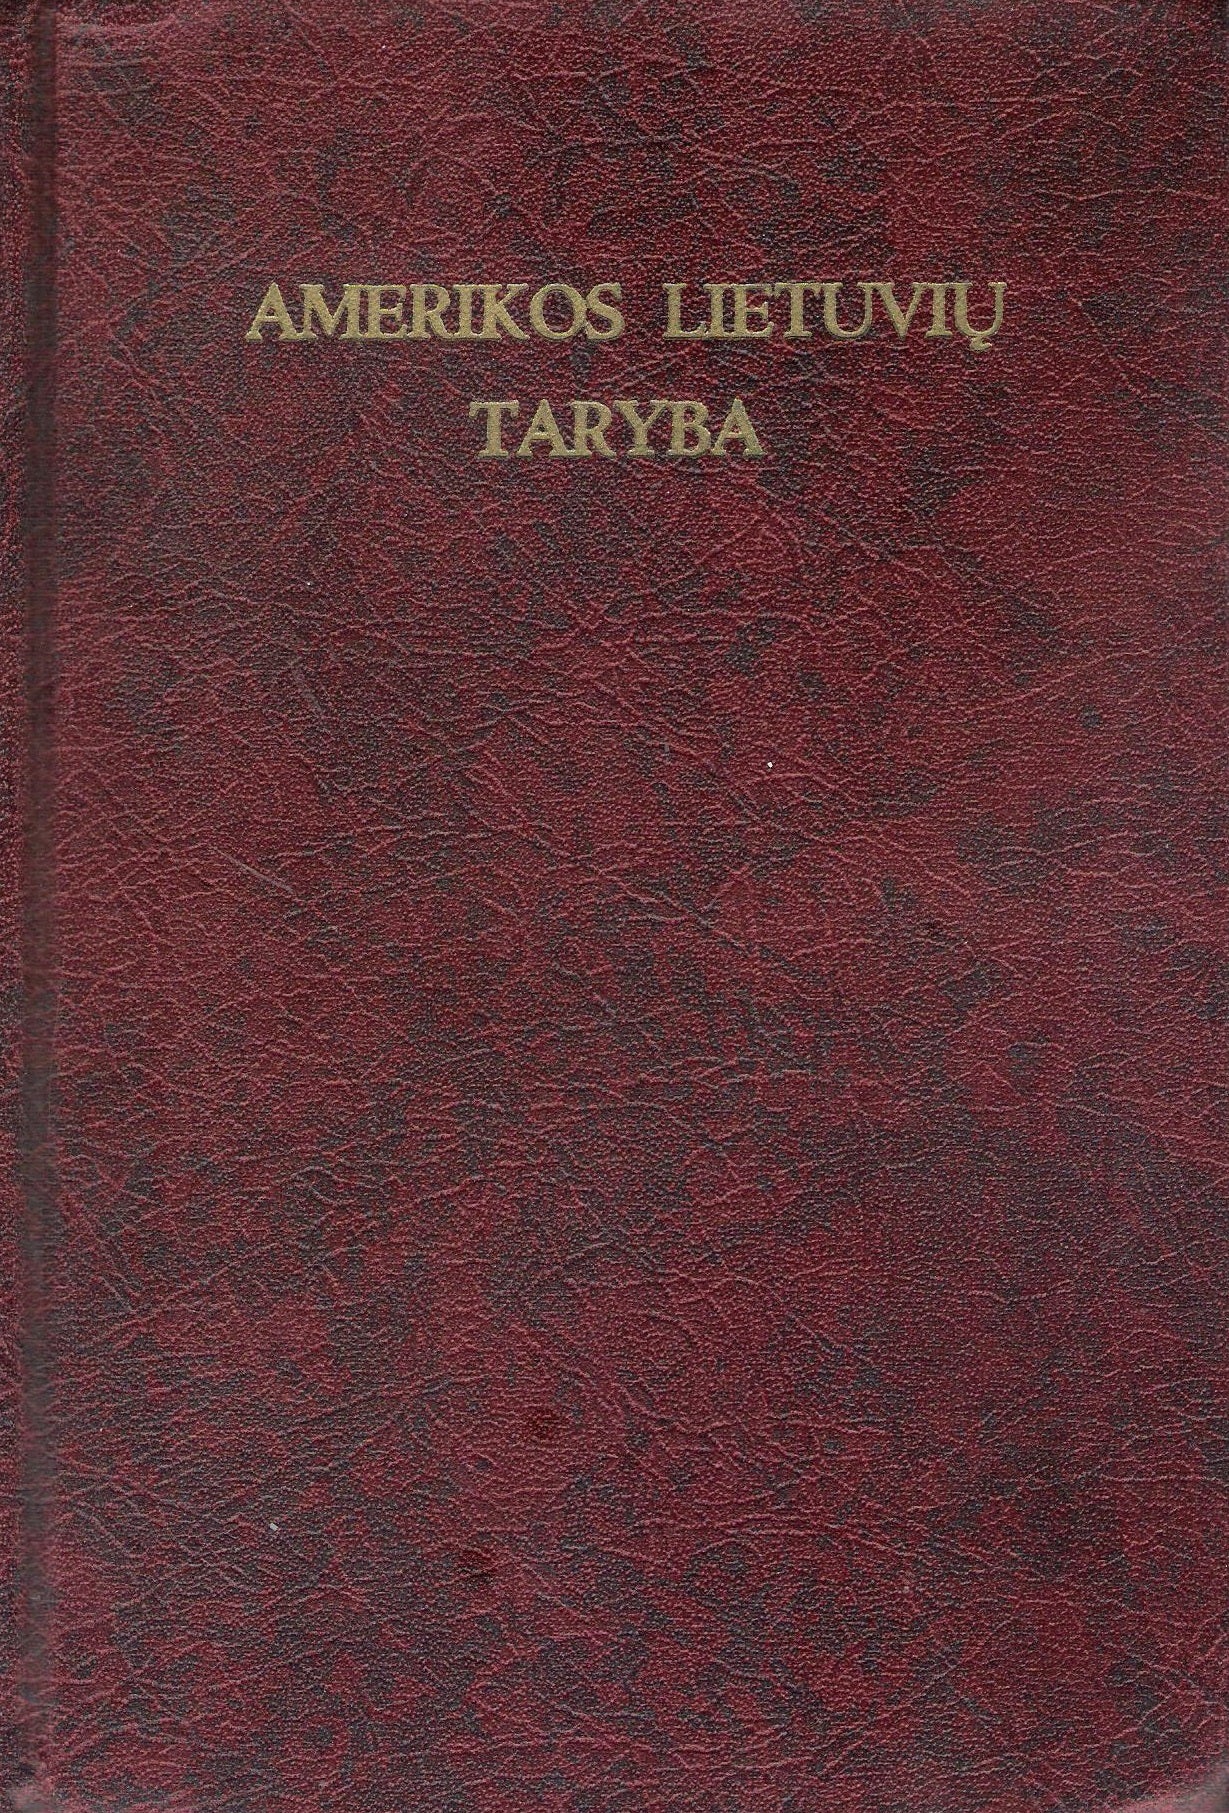 Amerikos Lietuvių Taryba = Lithuanian American Council, 1971, Chicago